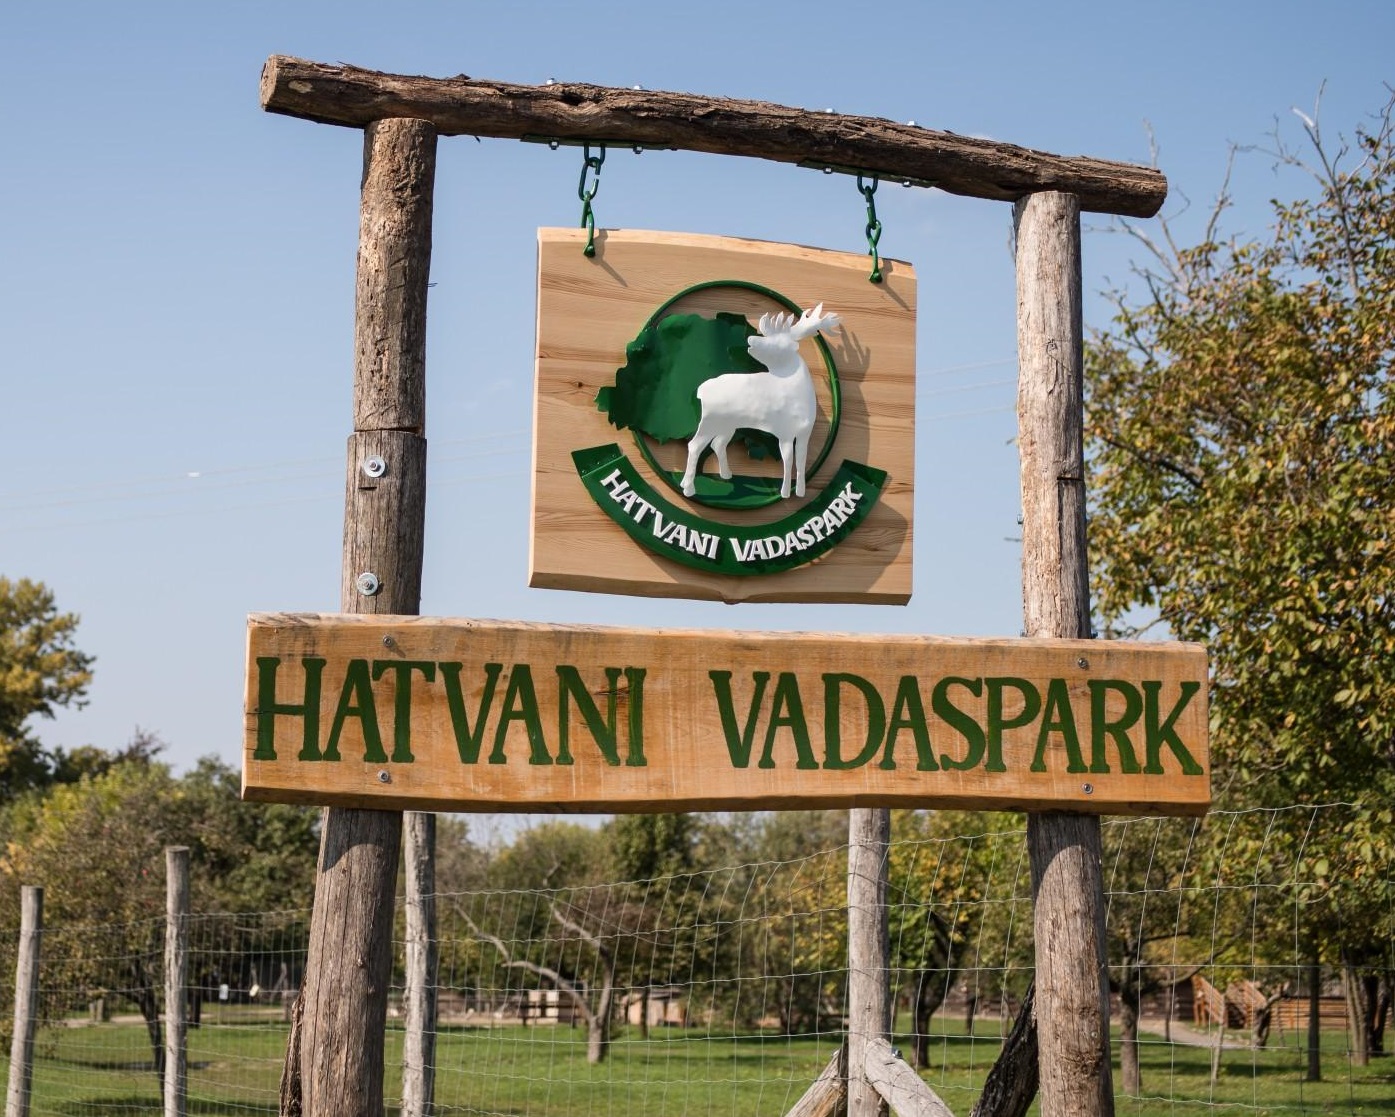 Hatvani Vadaspark